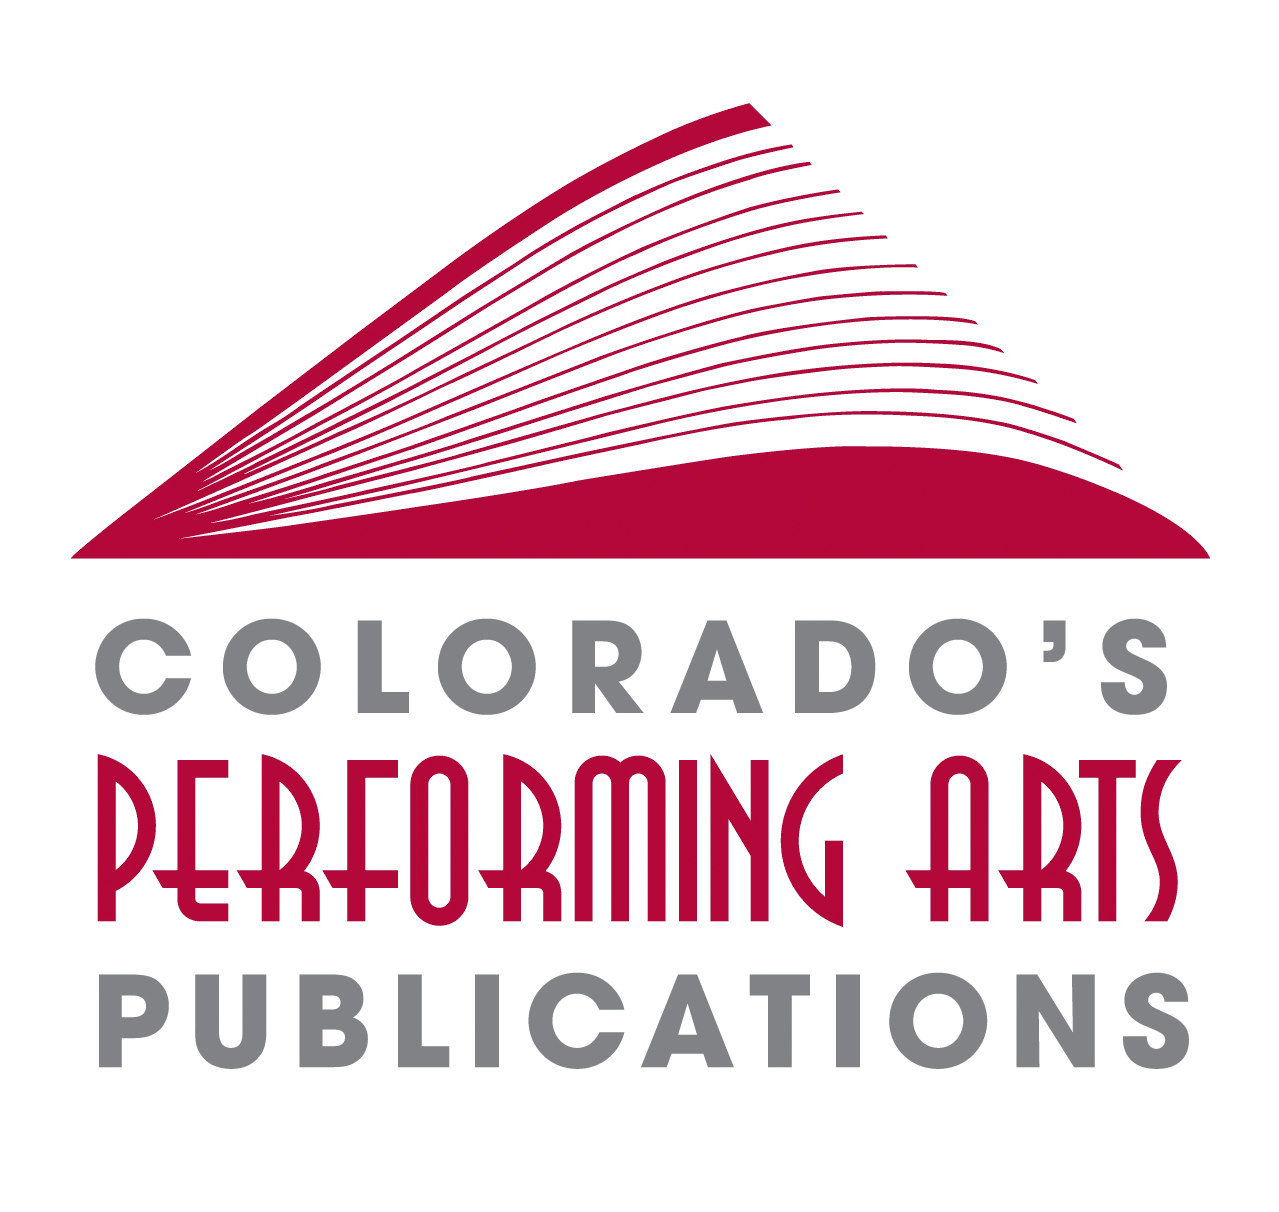 Colorado's Performing Arts Publications